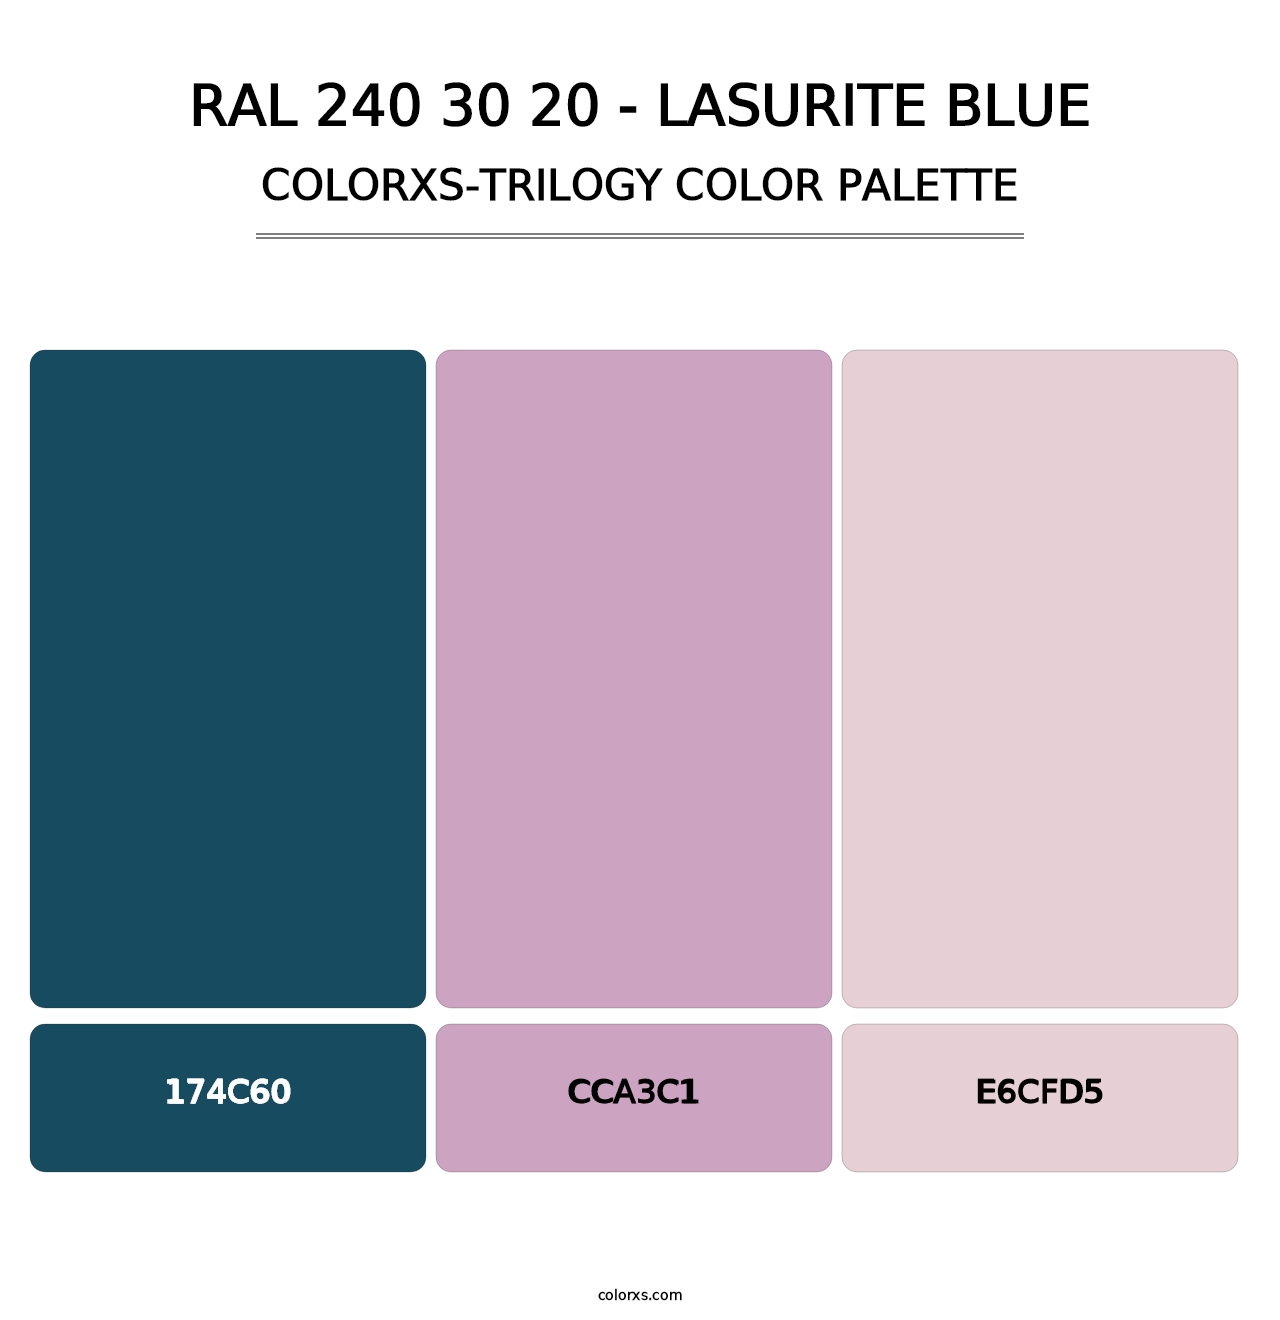 RAL 240 30 20 - Lasurite Blue - Colorxs Trilogy Palette